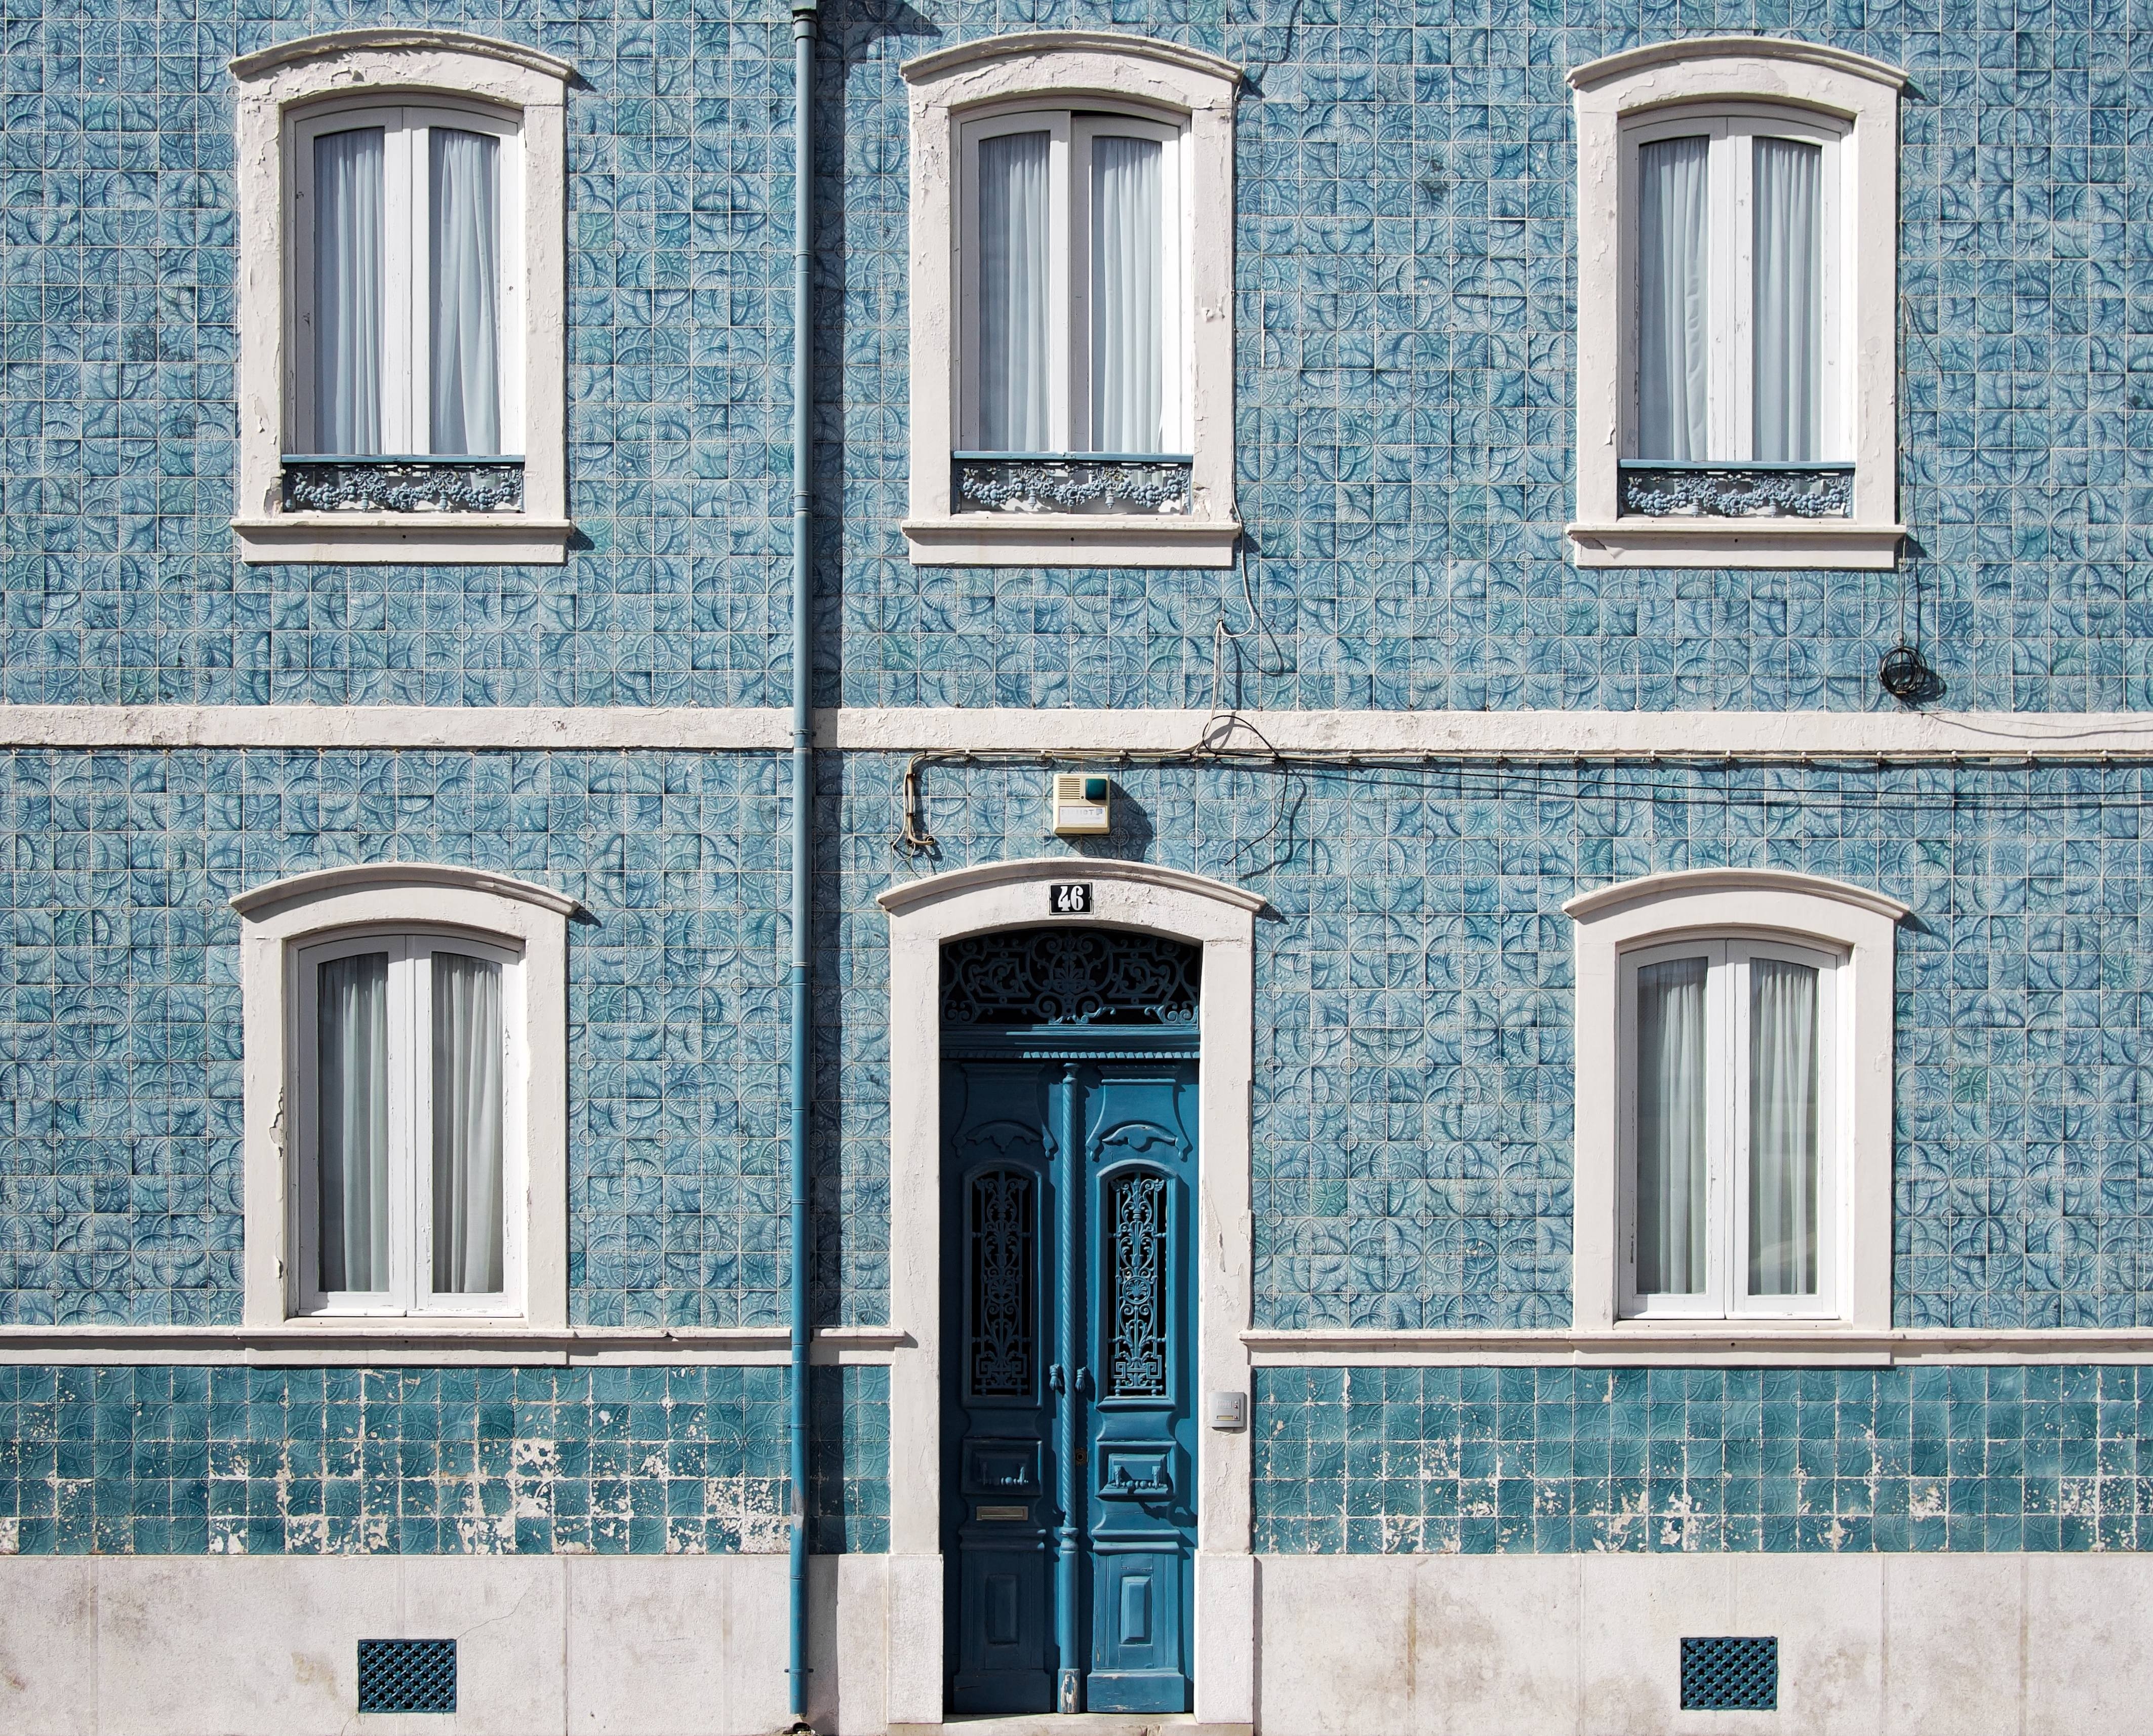 Стена фасада дома. Фасад здания. Текстура фасада здания. Окна на фасаде. Голубой фасад здания.